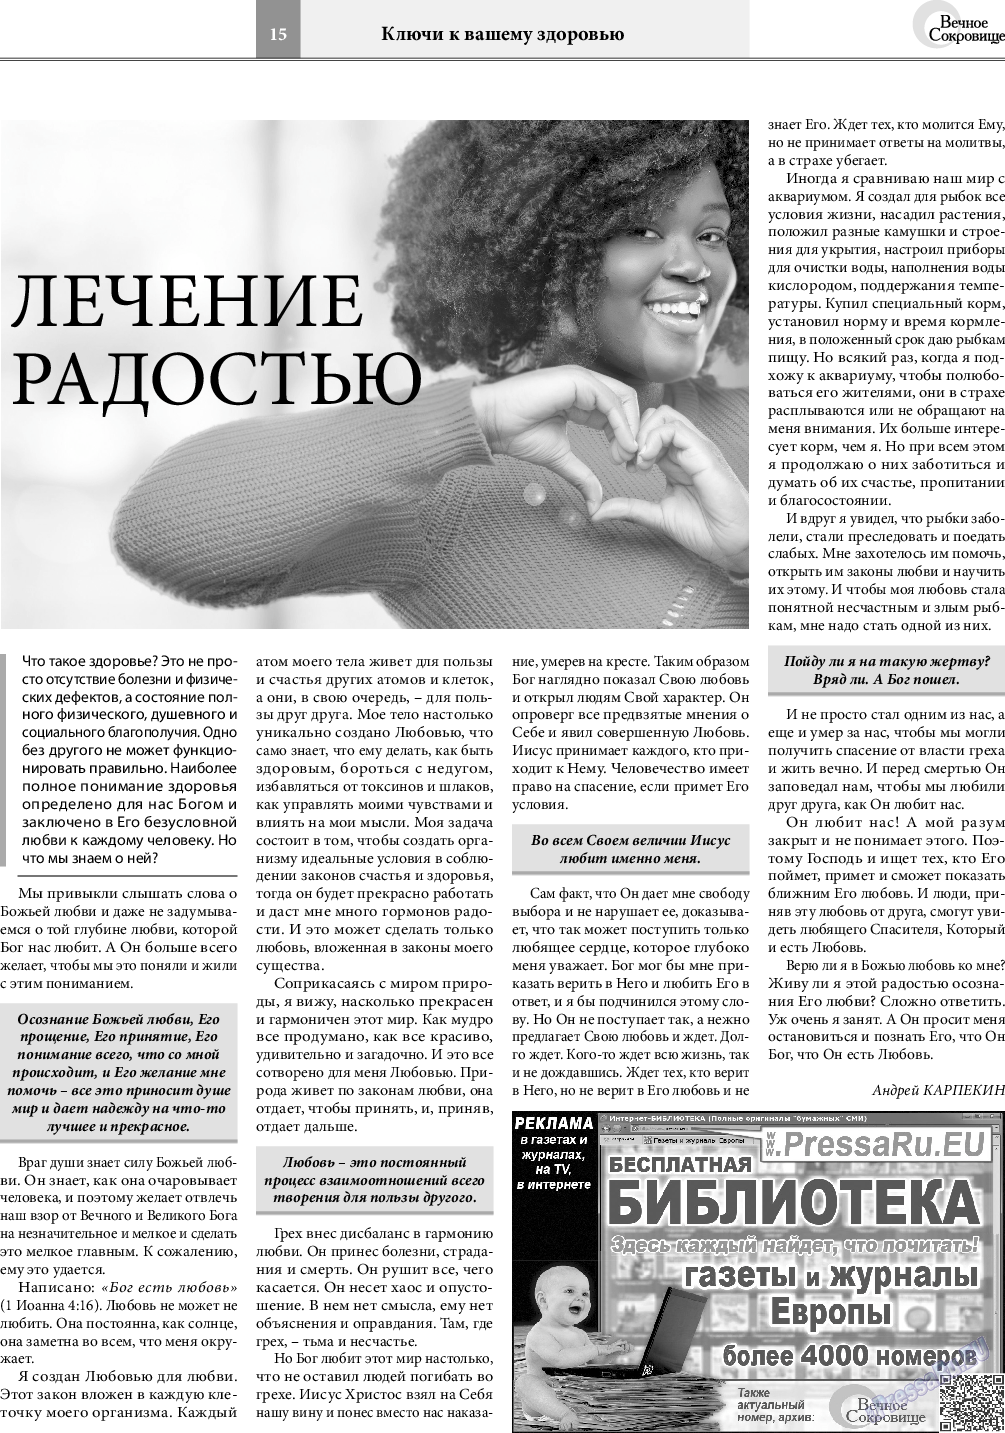 Вечное сокровище, газета. 2020 №4 стр.15